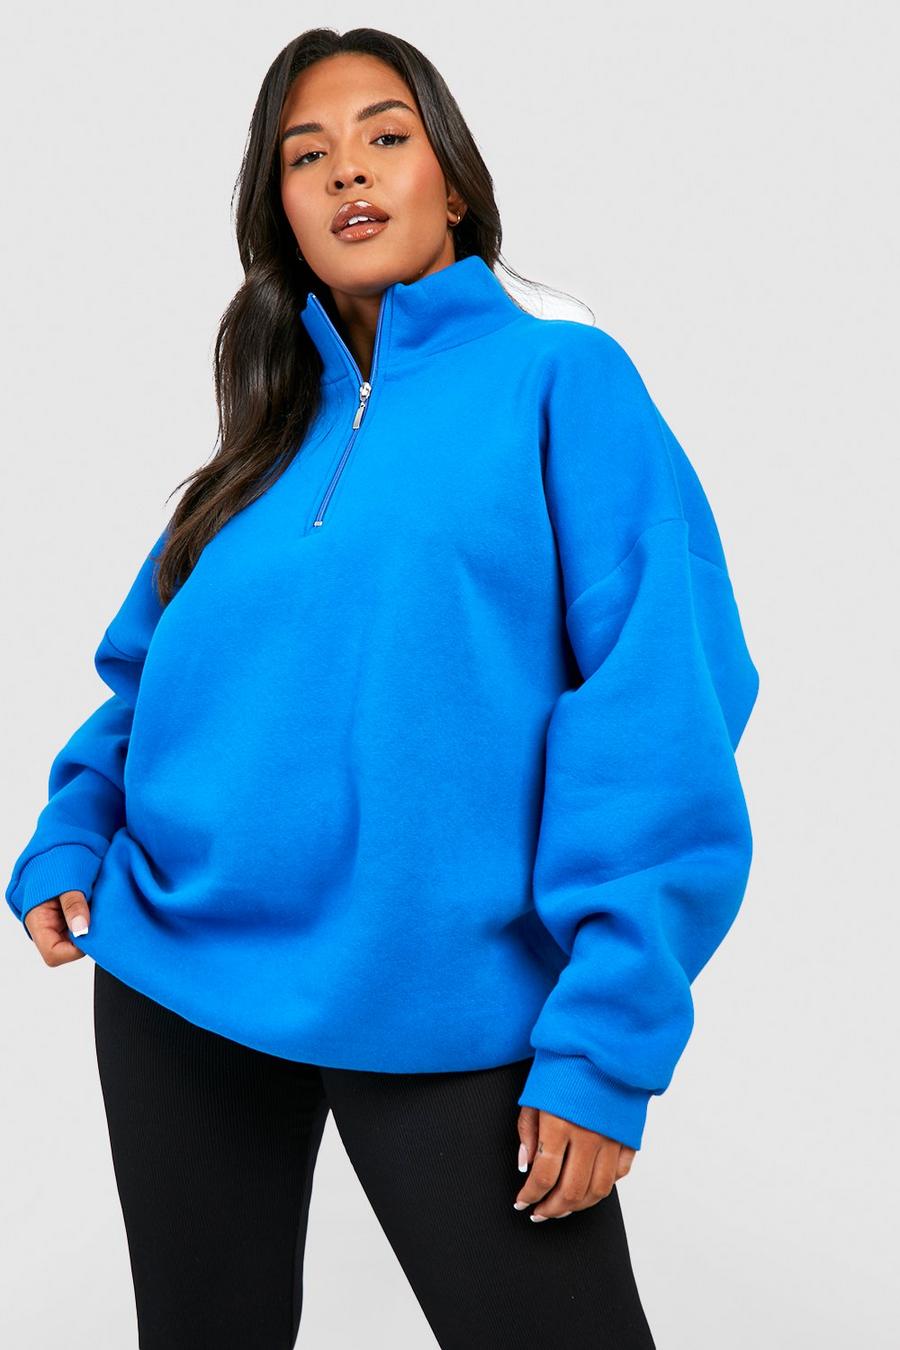 Plus Size Women Sweatshirts Baggy Slouchy Women Oversized Sweater